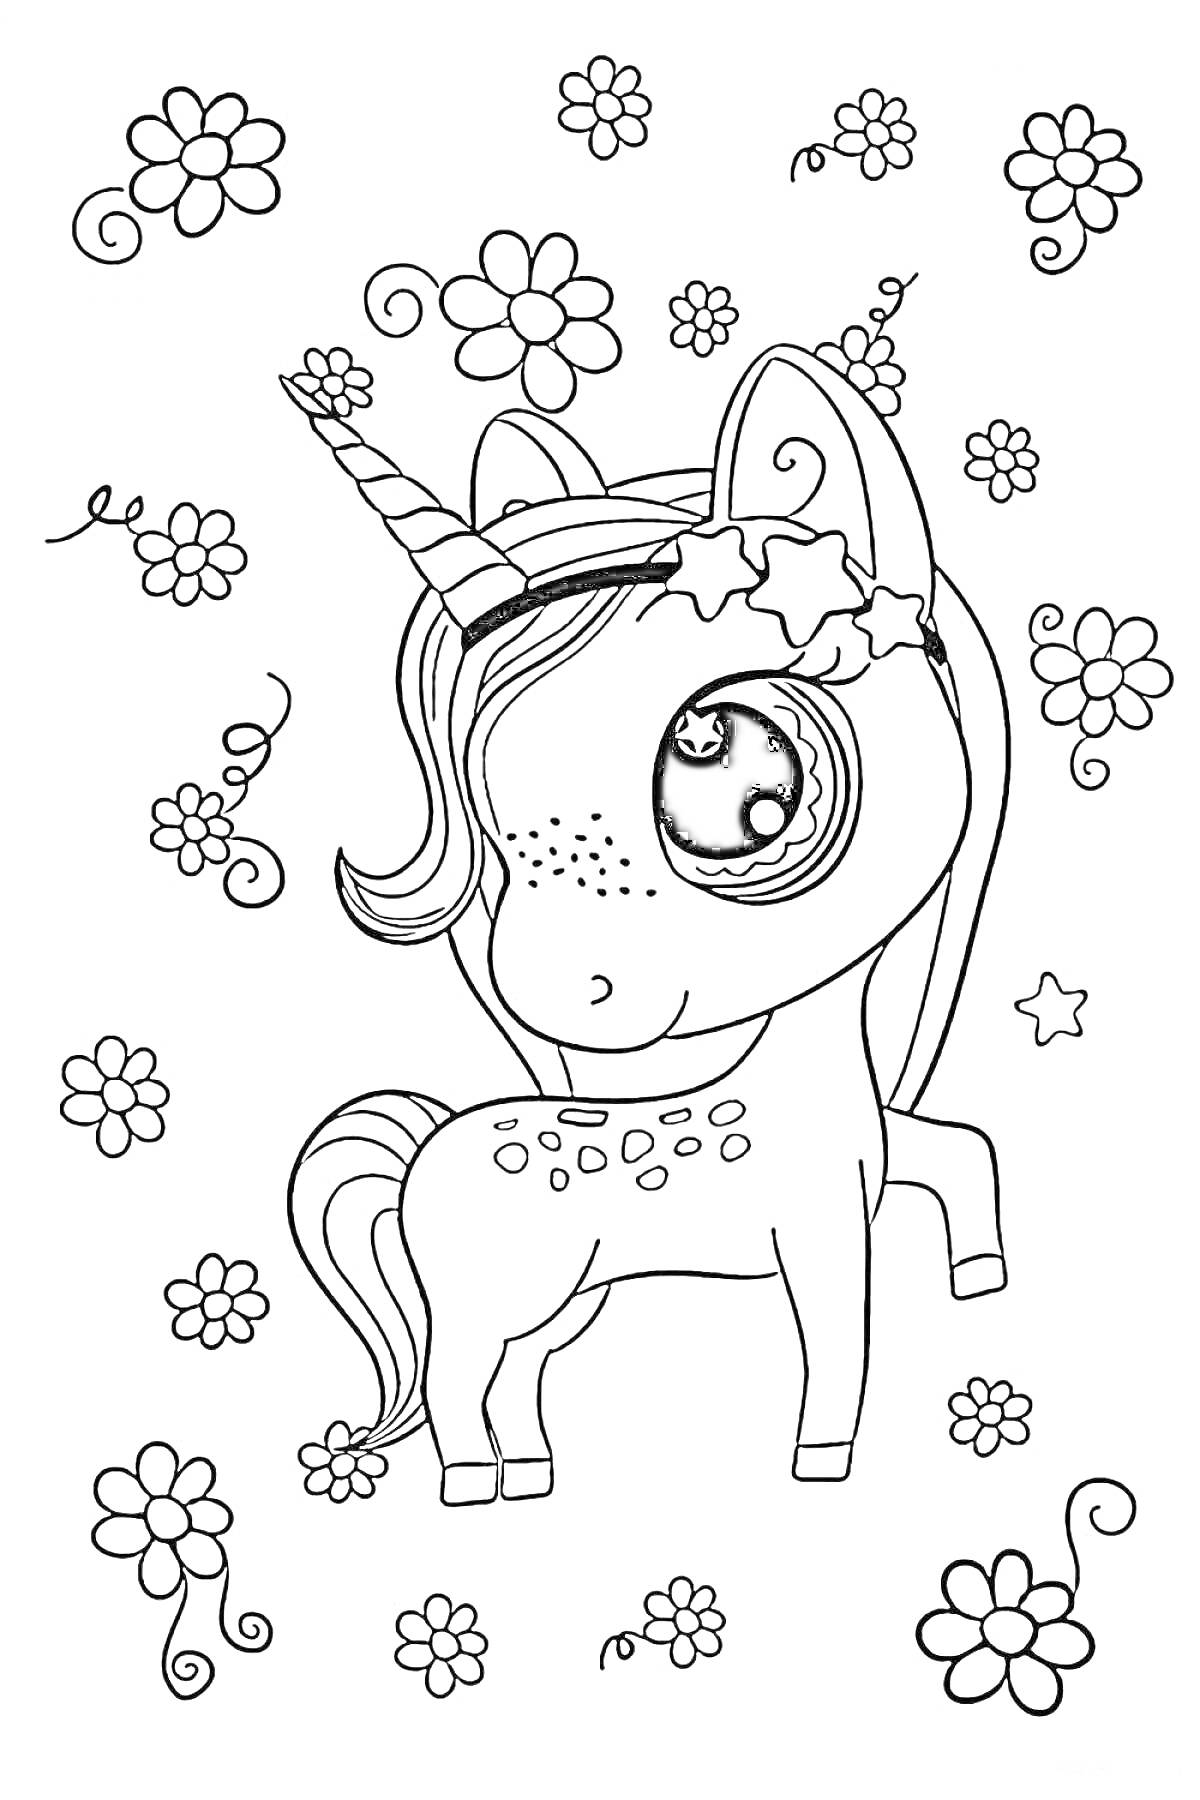 Раскраска Единорог с большими глазами и цветочным венком, окружённый цветами и звёздами